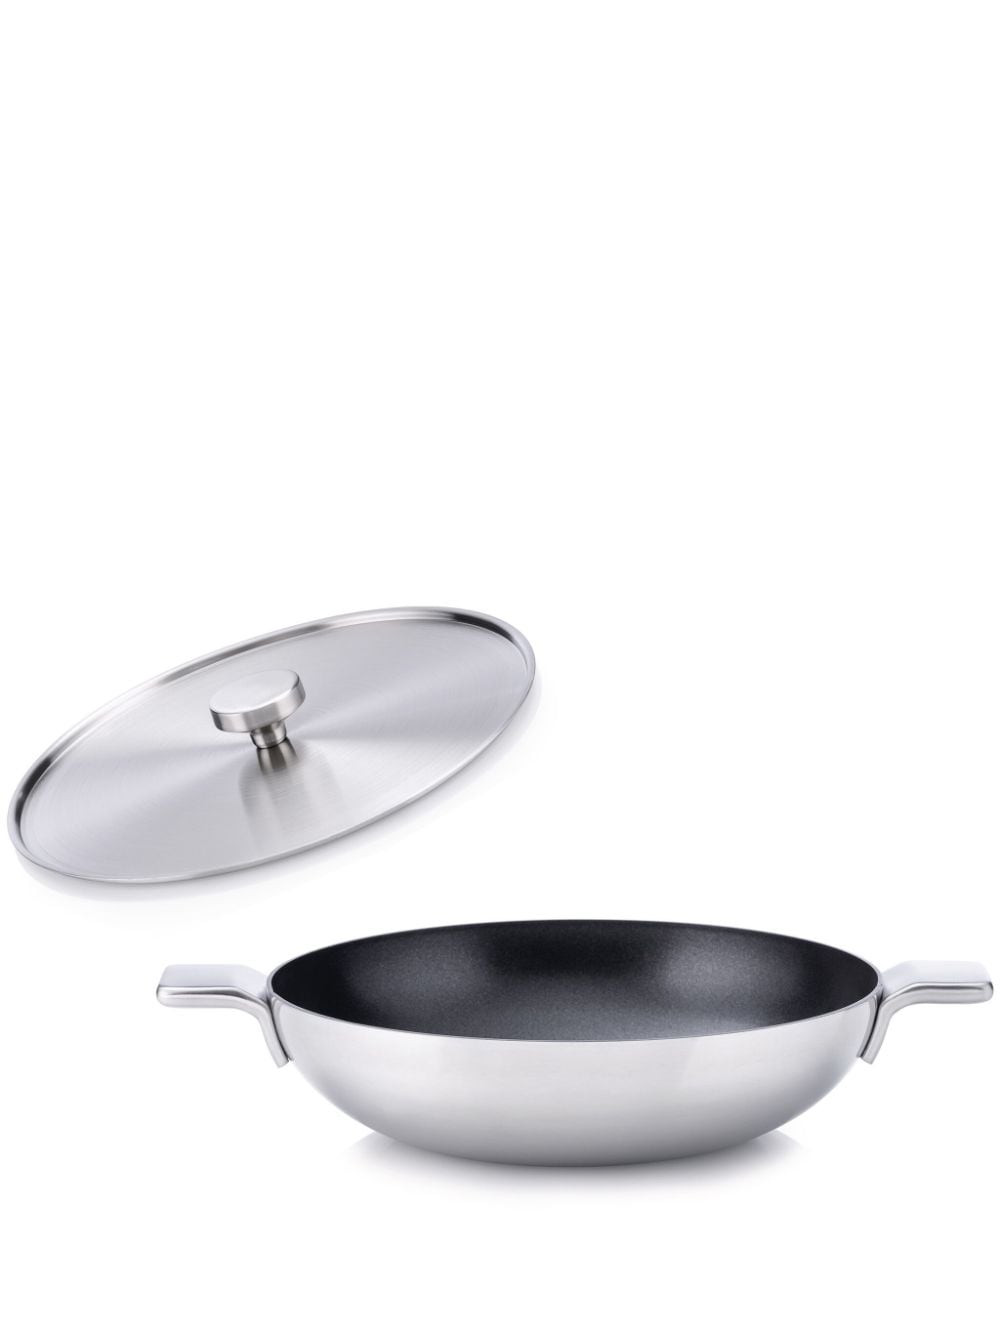 Alessi stainless steel wok pan (28cm) - Silver von Alessi